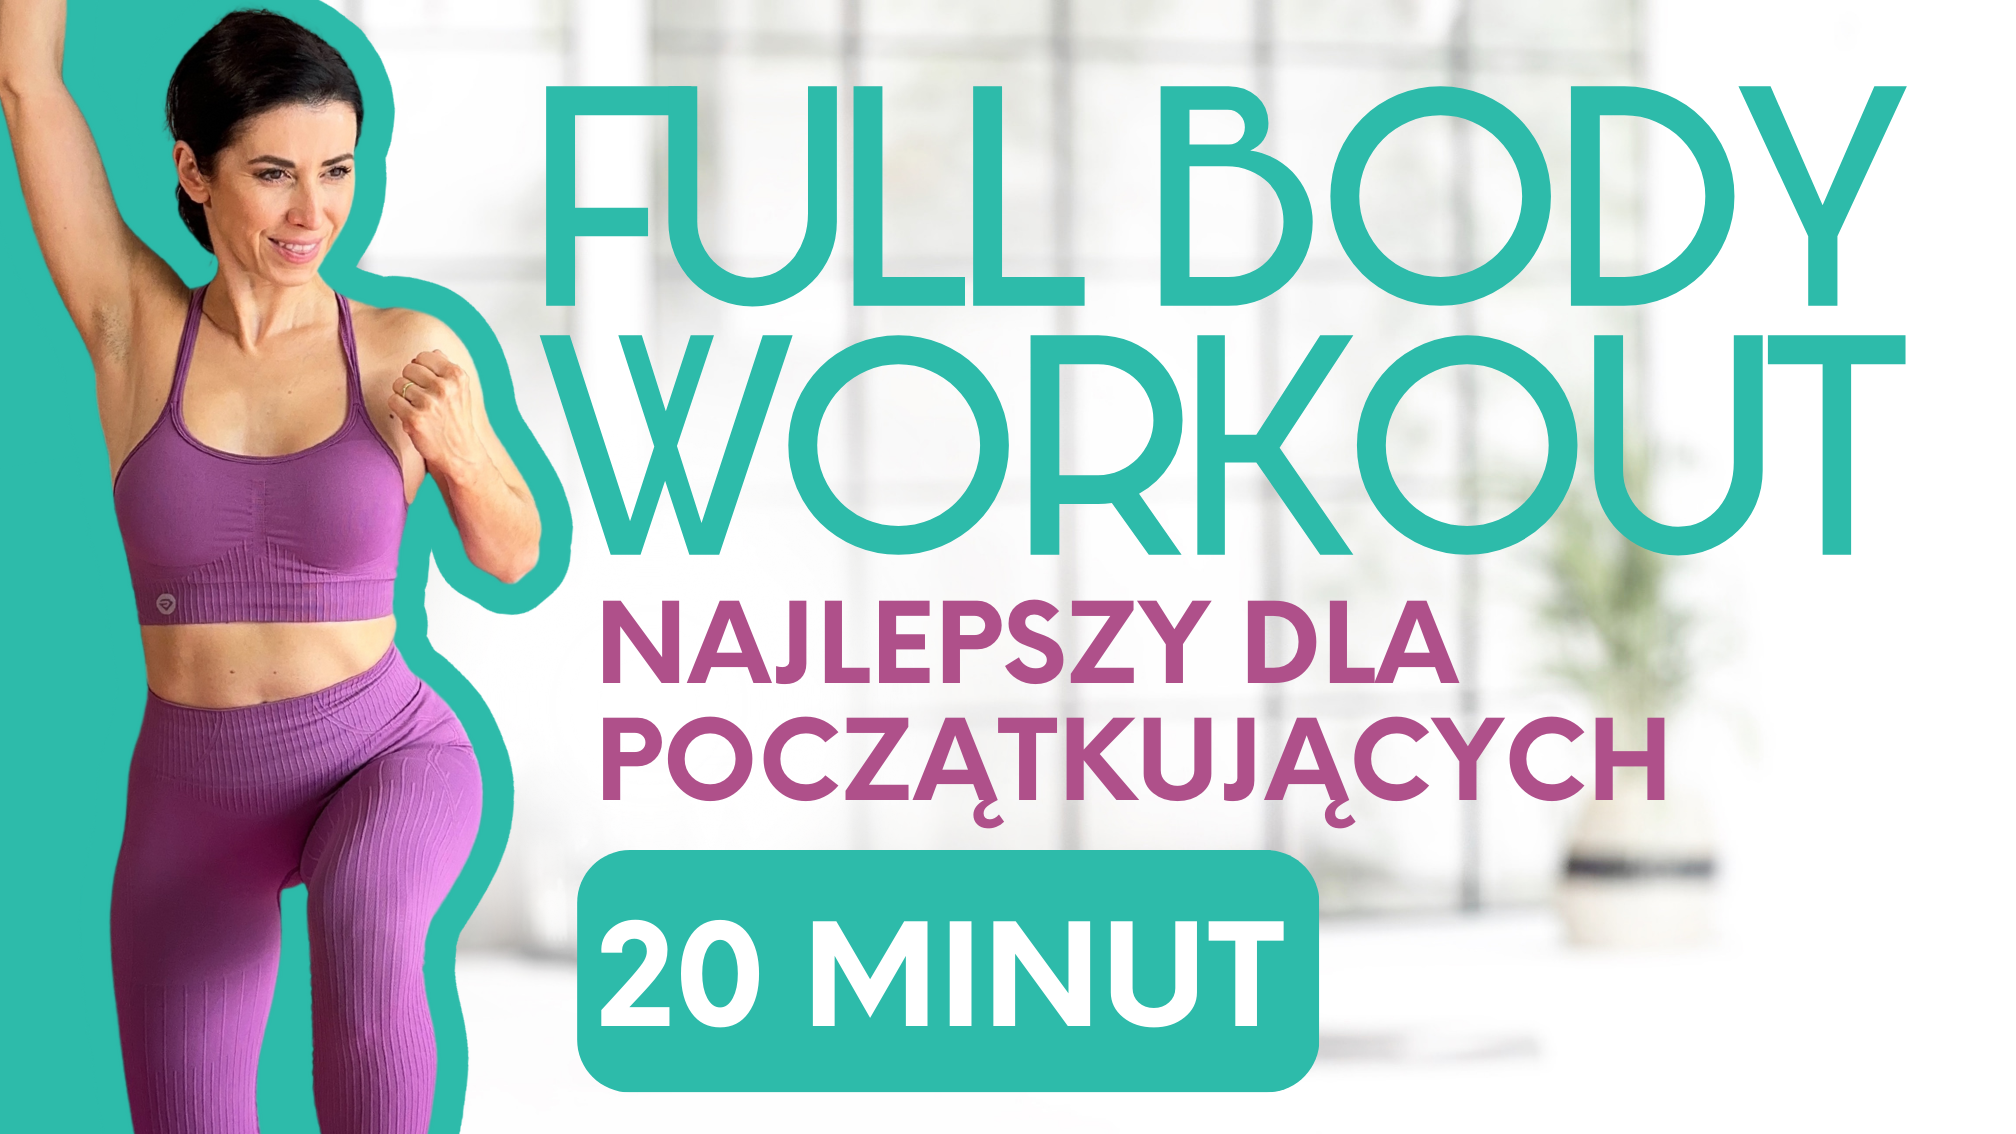 Full Body Workout Najlepszy Dla Początkujących 20 Minut 3438